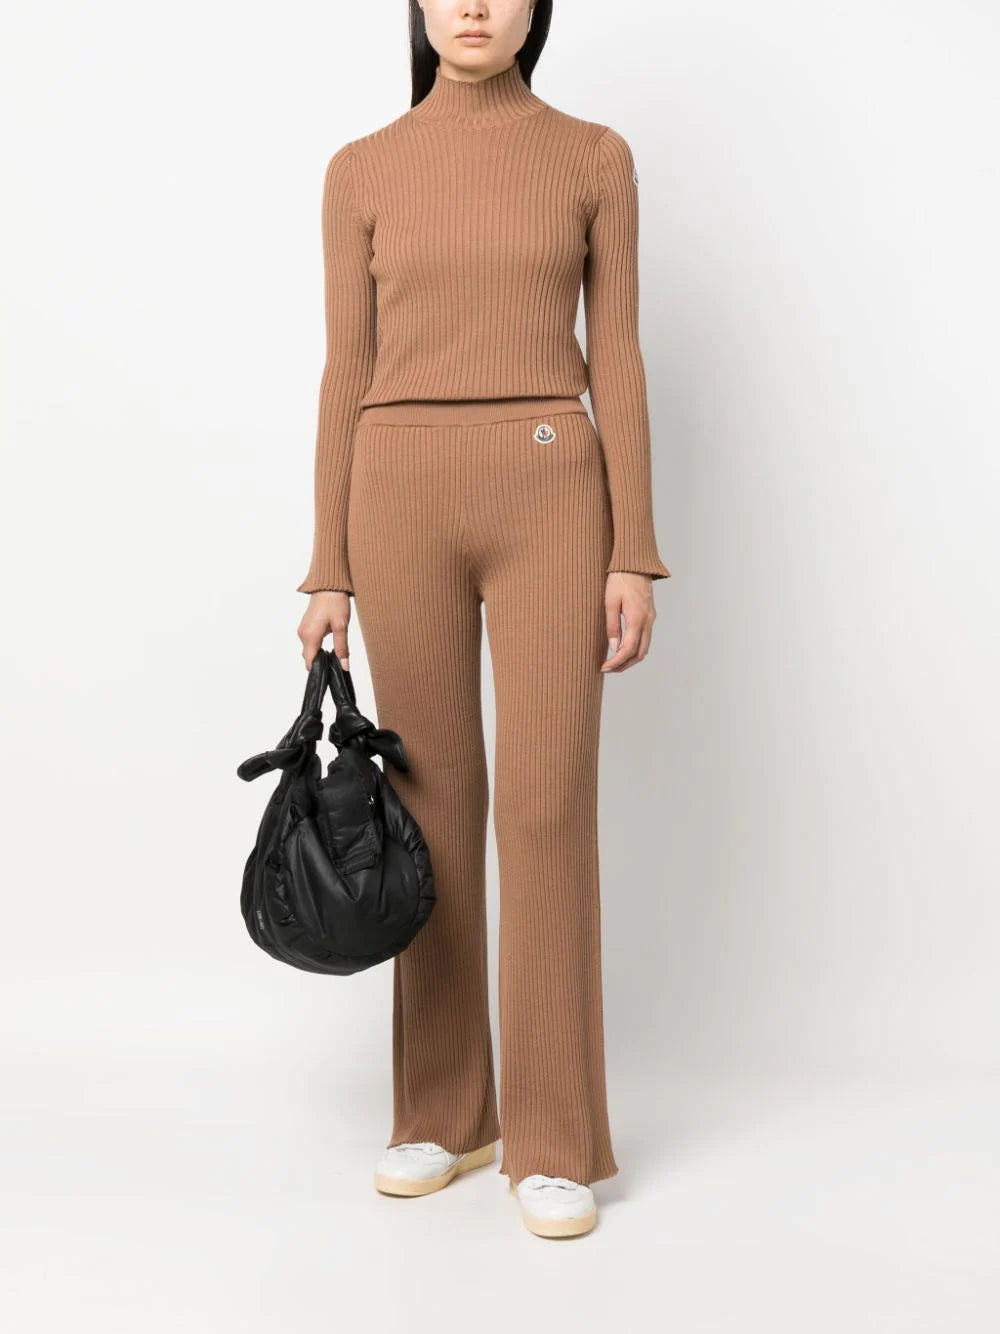 MONCLER WOMEN Knitwear Bottoms Pantalone Tricot Brown - MAISONDEFASHION.COM